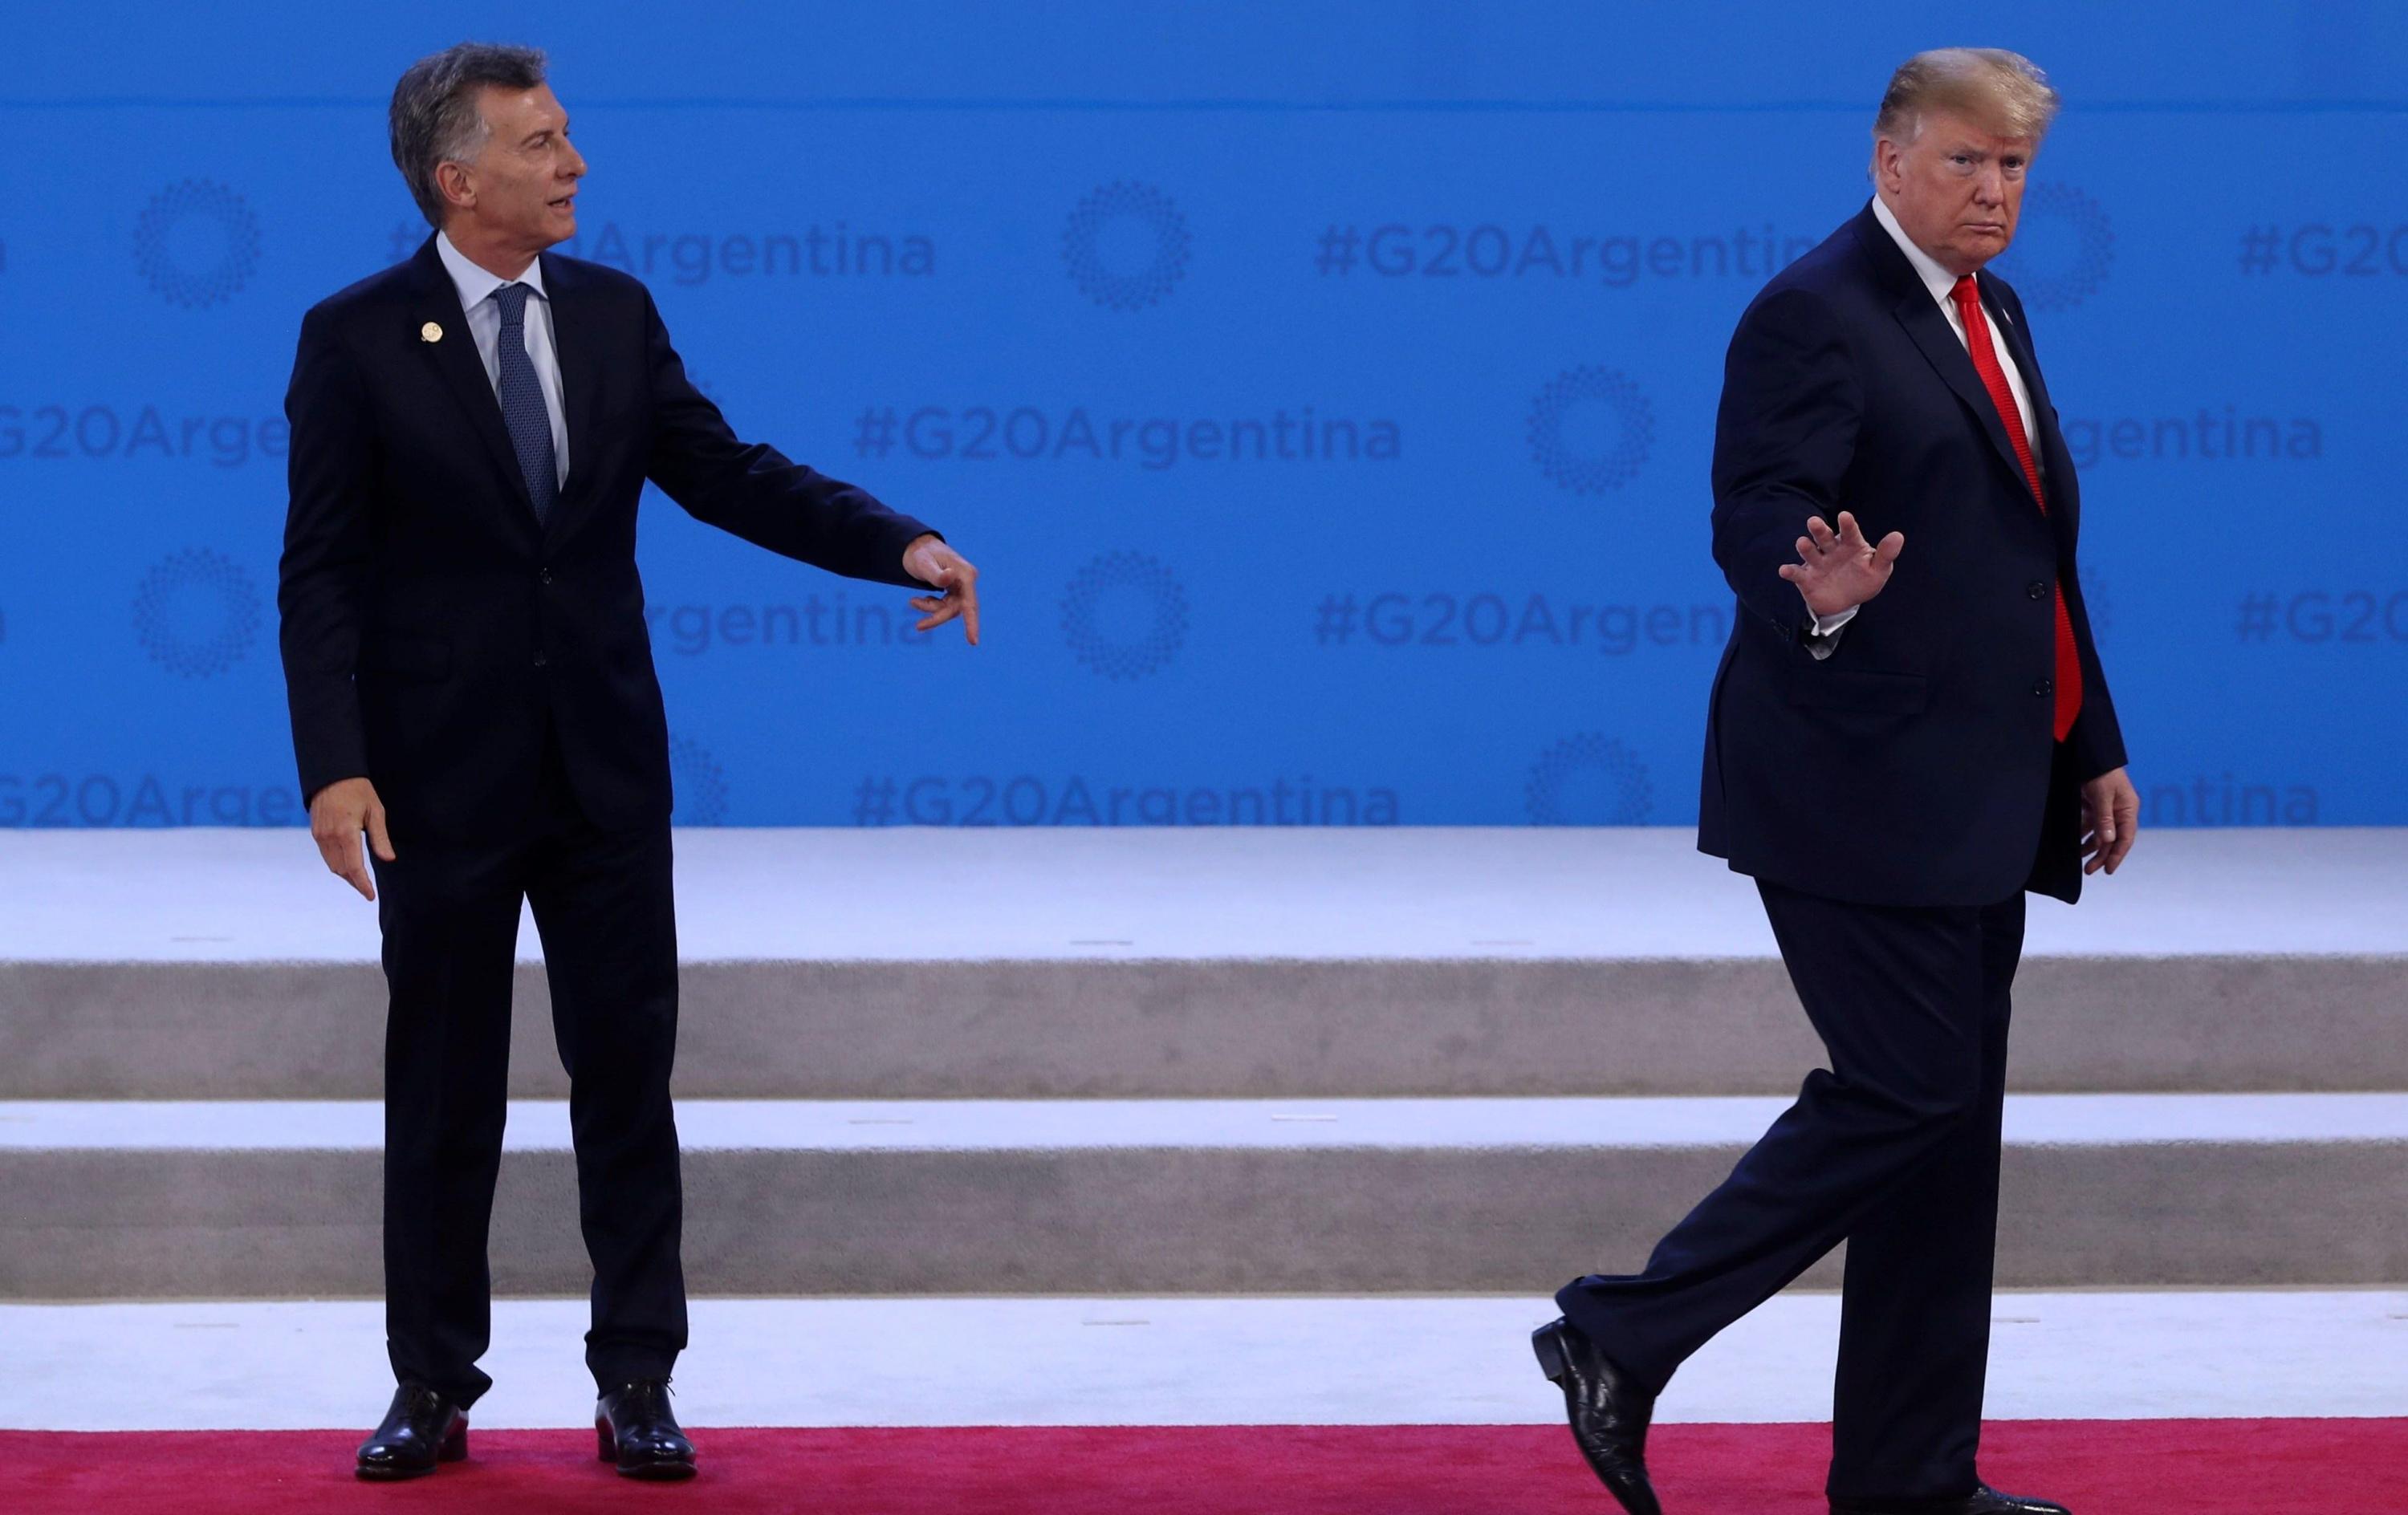 El mandatario de los Estados Unidos, Donald Trump, hizo pasar un mal momento a su homólogo argentino, Mauricio Macri durante la cumbre del G20.